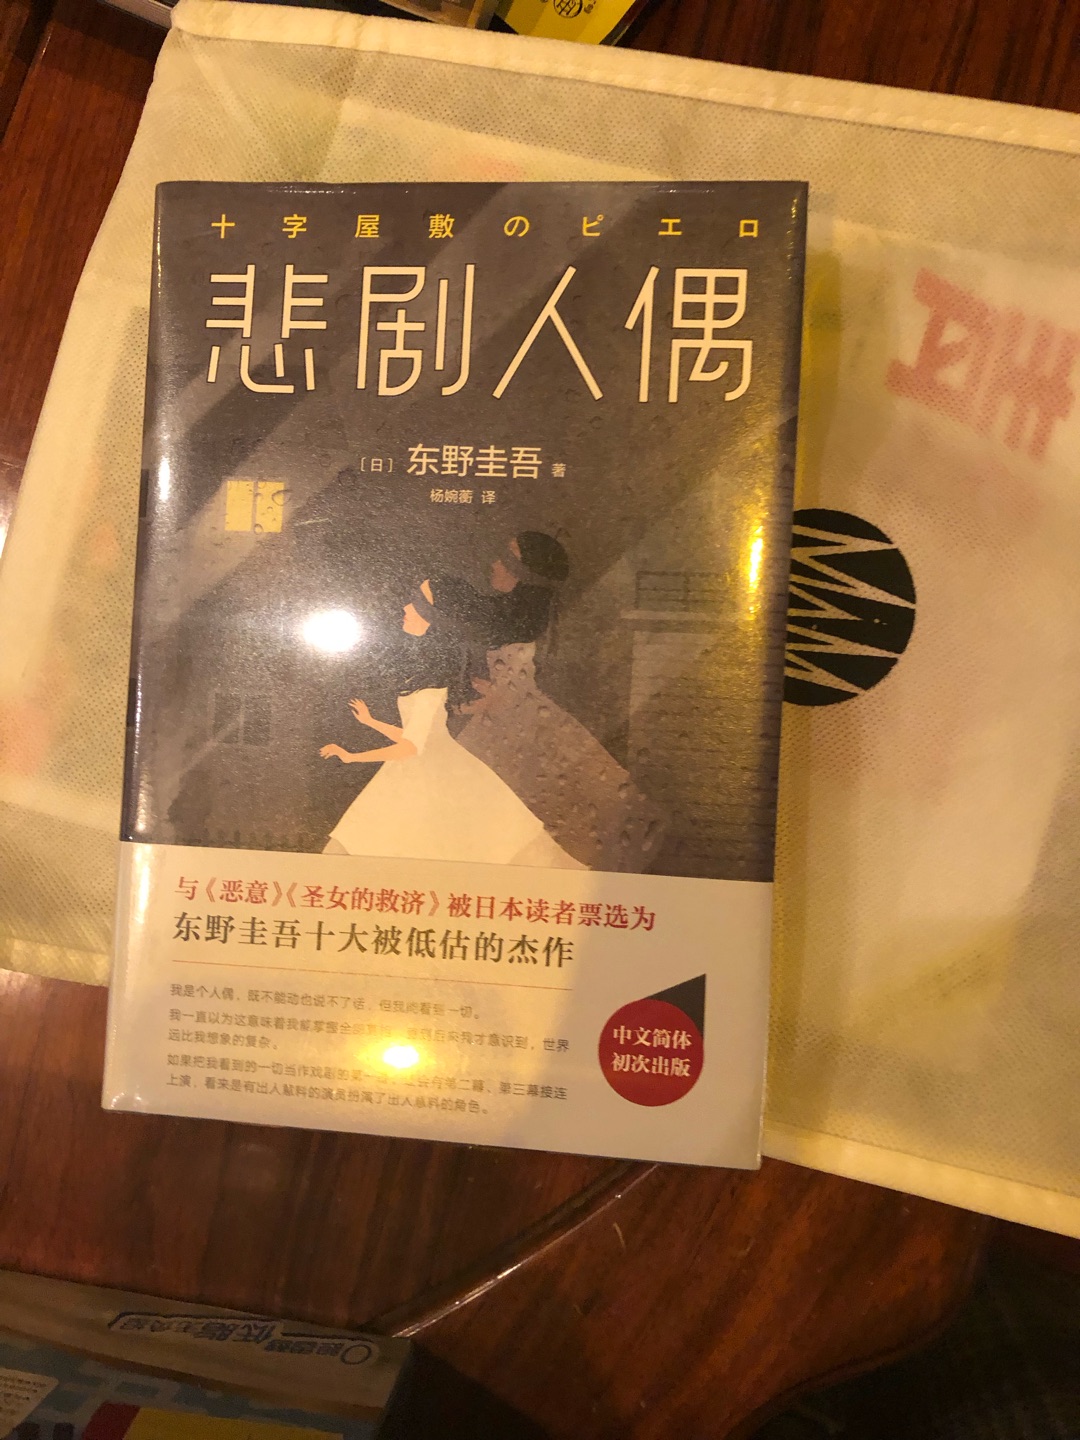 东野圭*的书是真的挺好看的，emmm包装还行